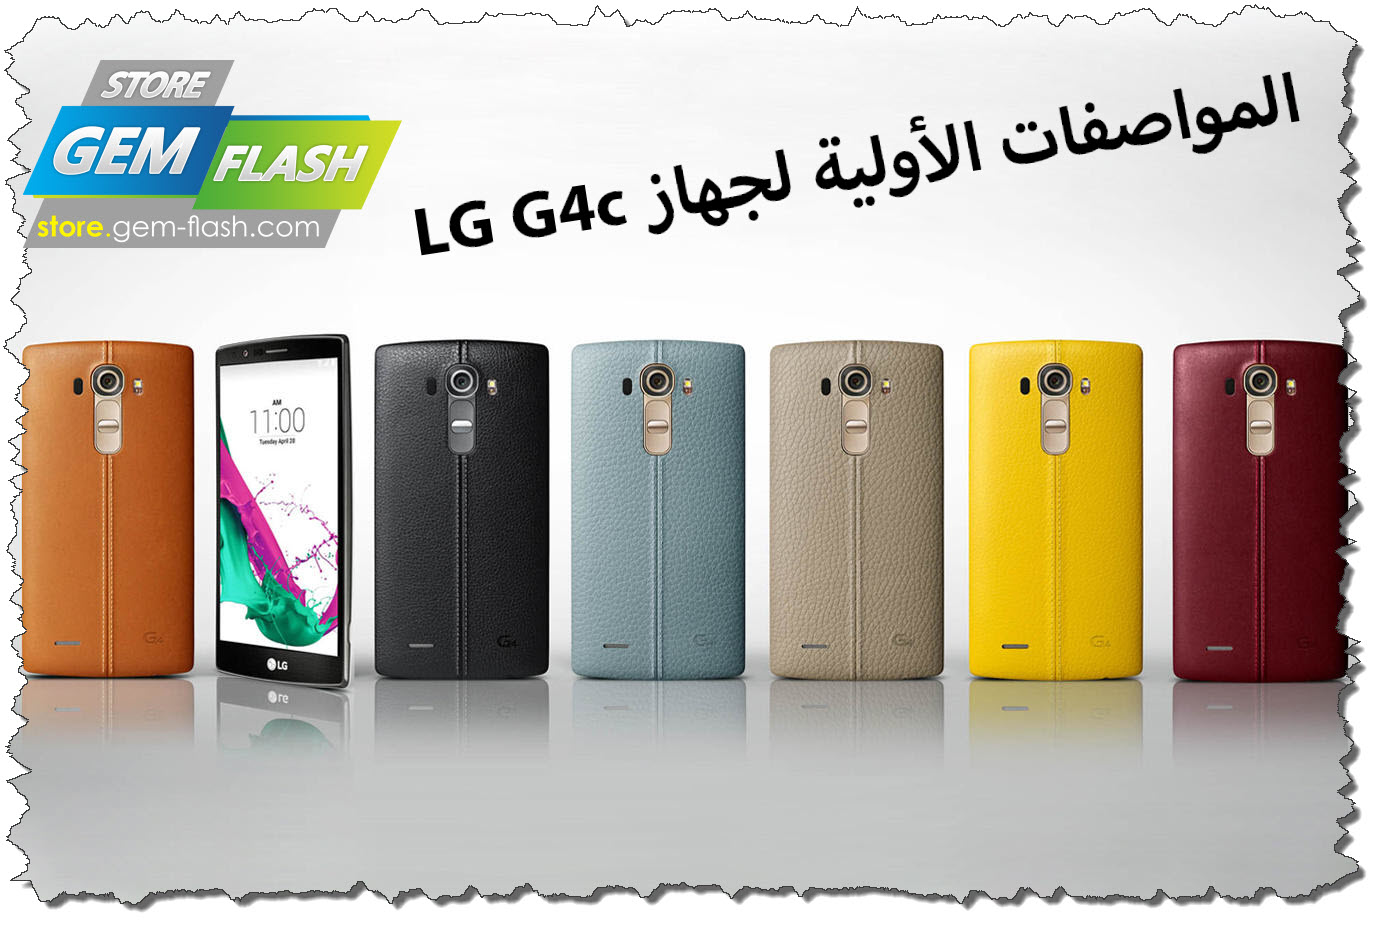     LG G4c      2015